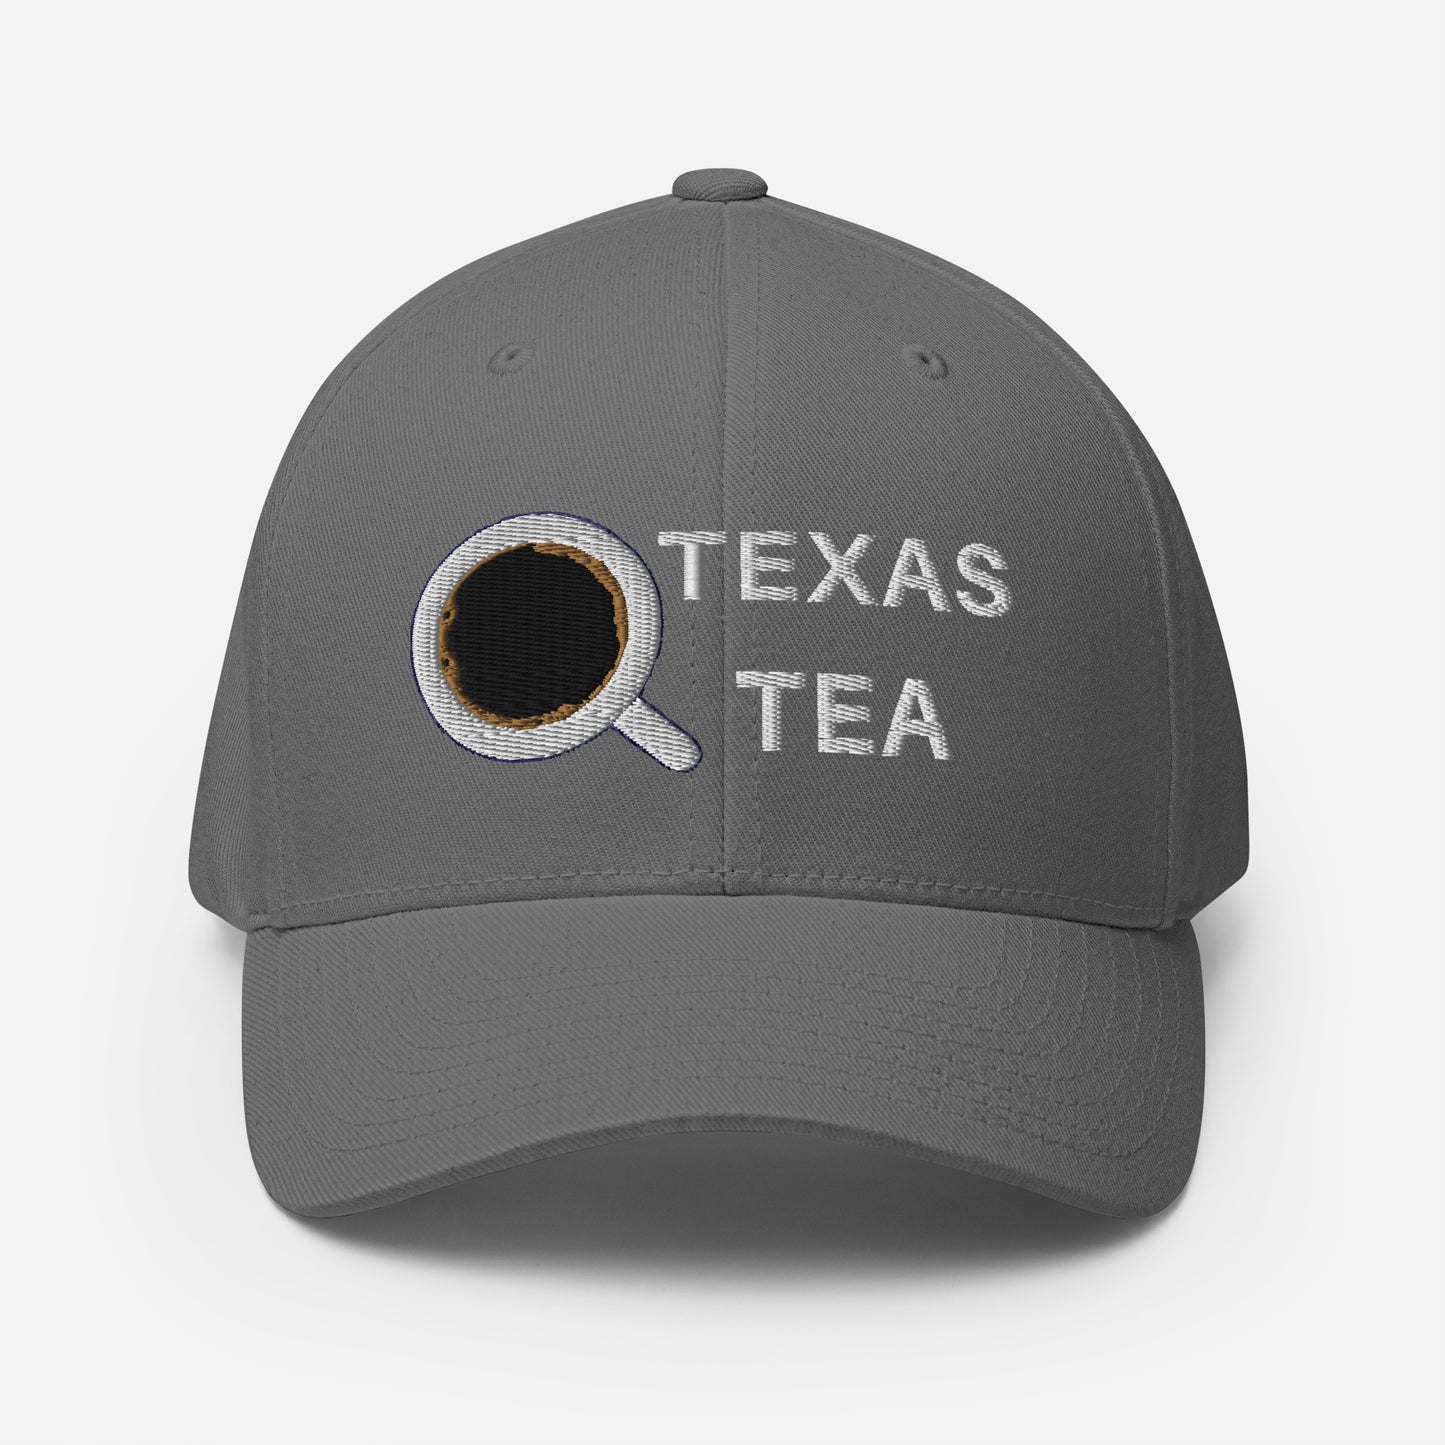 TEXAS TEA Structured Twill Cap